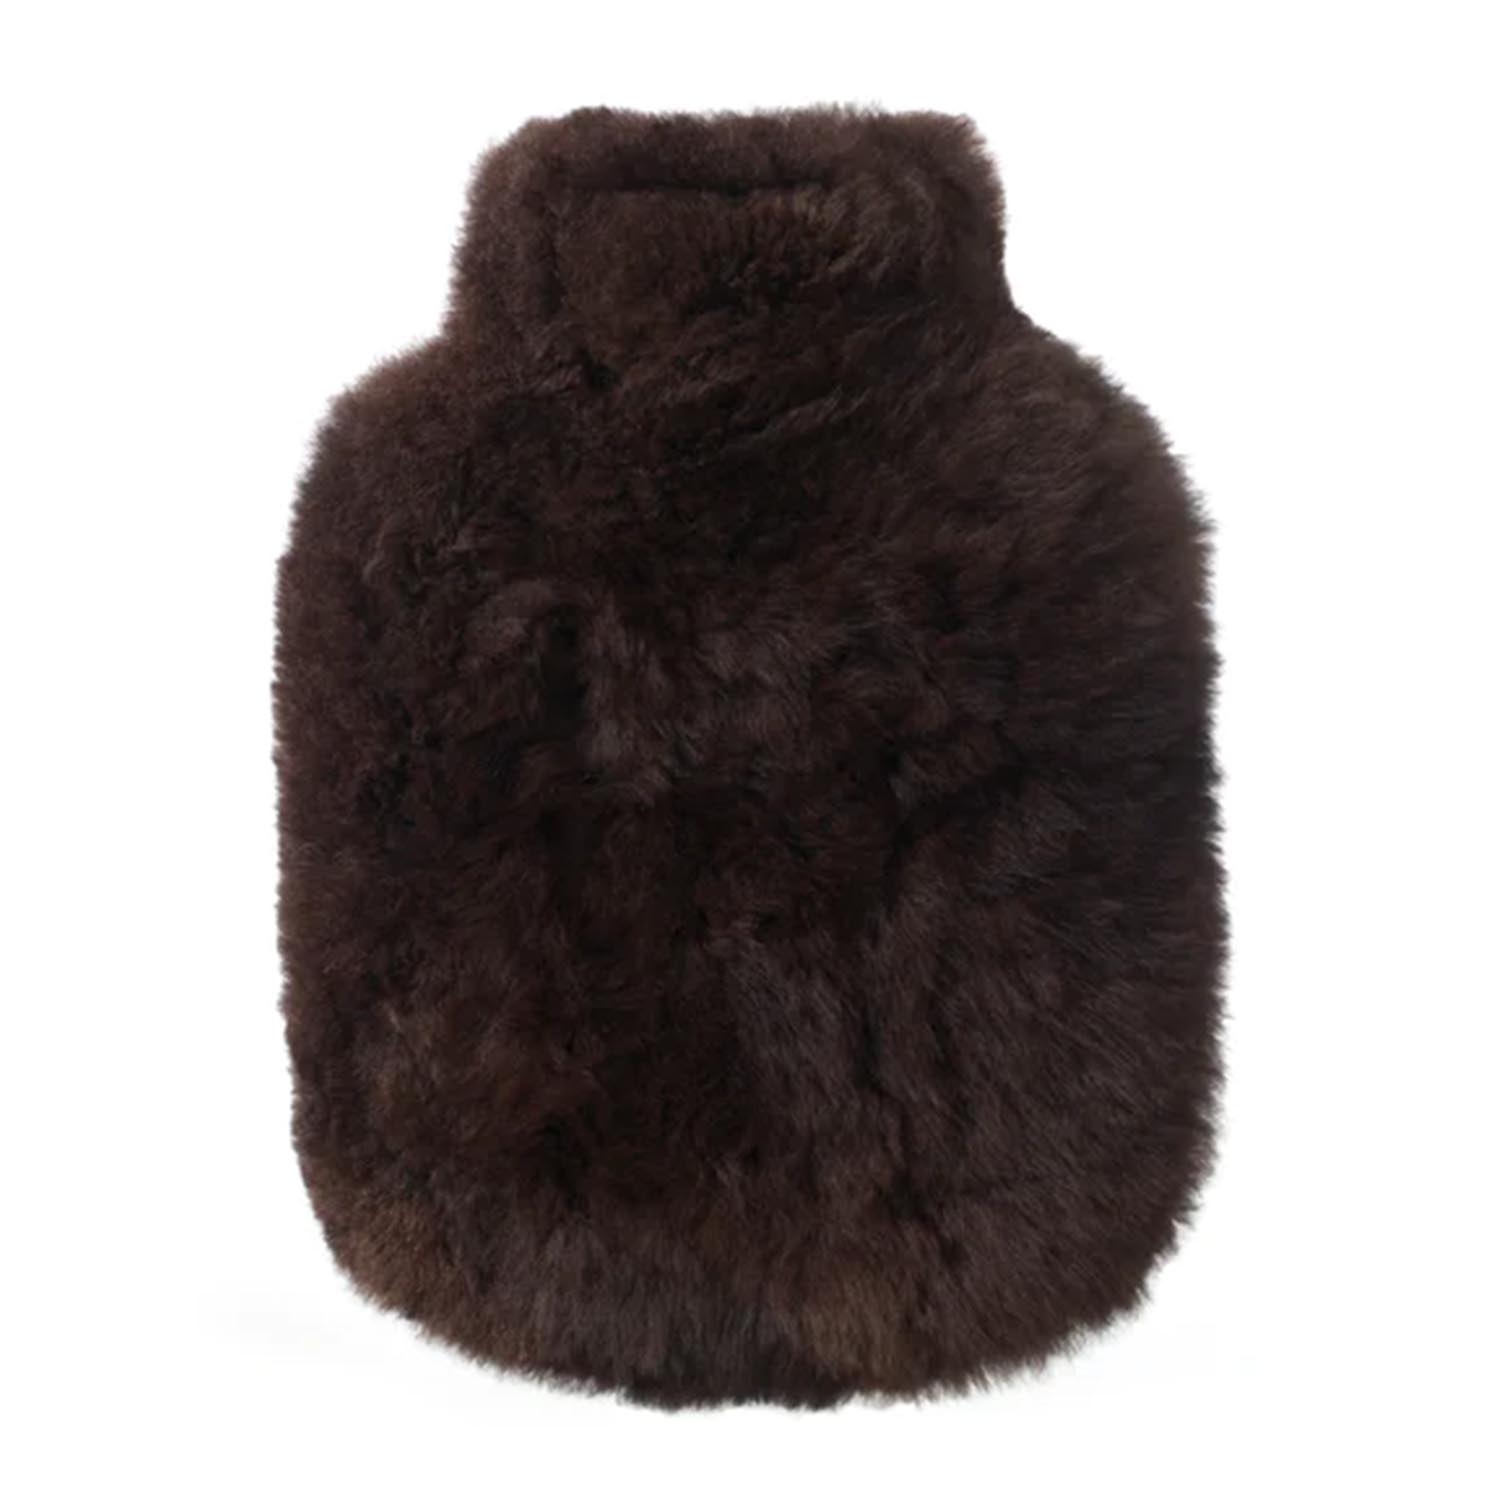 Wärmeflasche Calmo, Farbe dark chocolate, Grösse regular (1,8l) von Weich Couture Alpaca